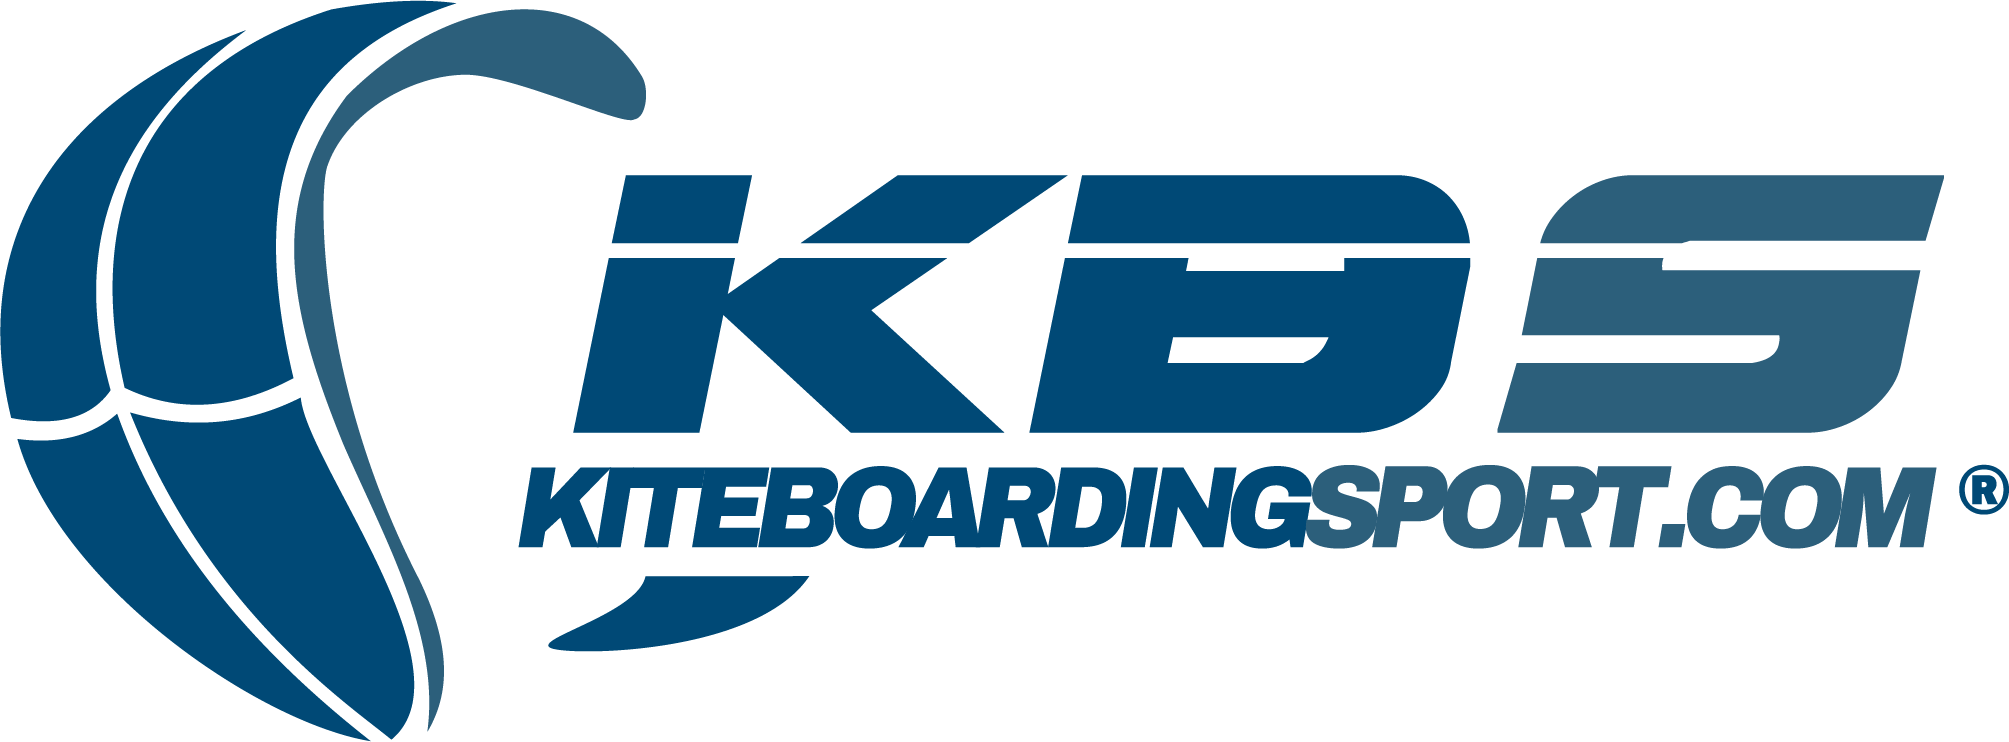 KiteboardingSport / Adap Soluciones Avanzadas S.L.